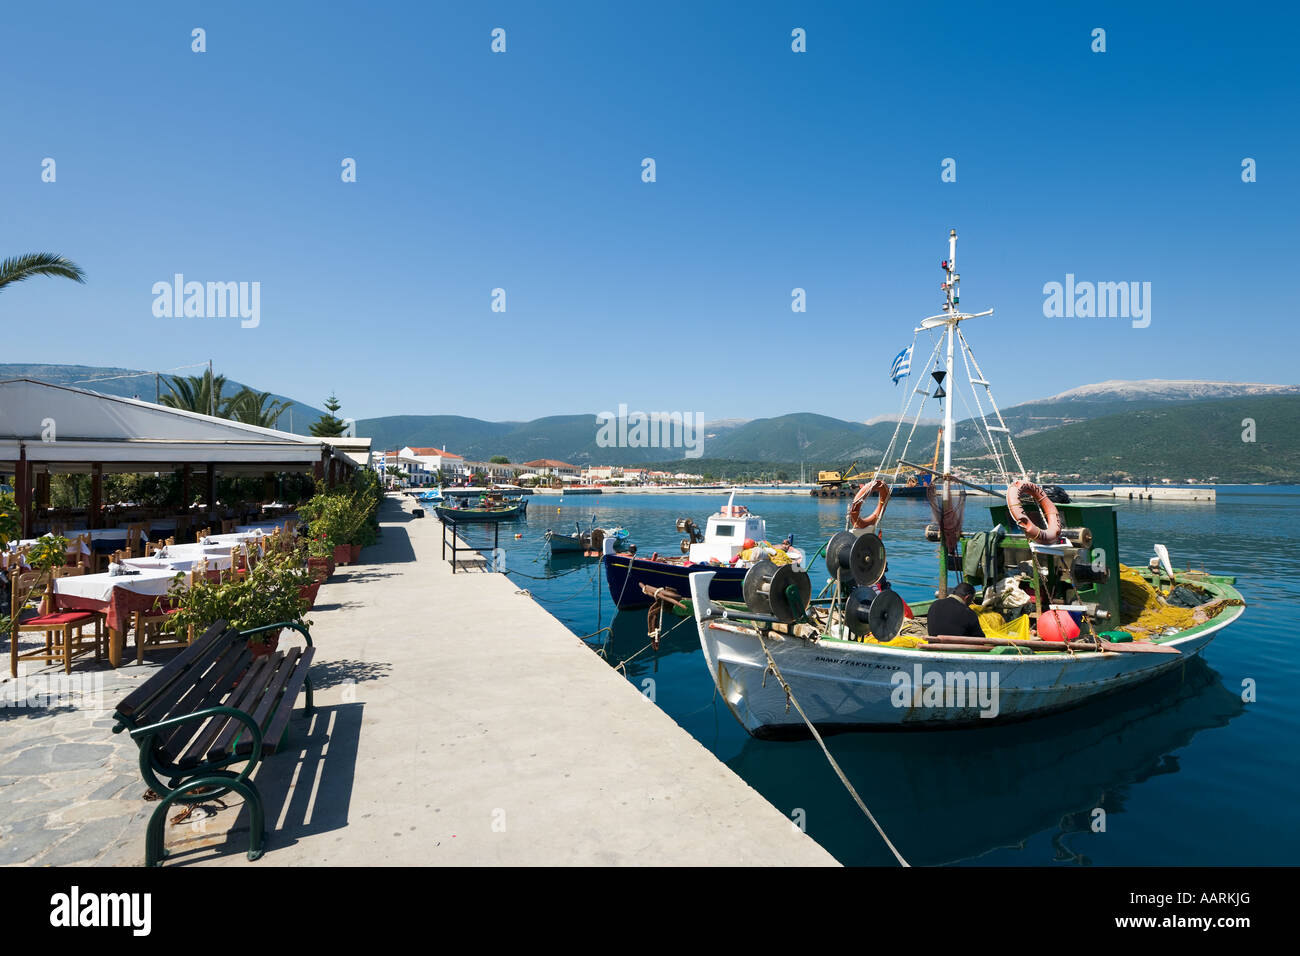 Taverne direkt am Meer, Angeln, Boote und Promenade, Sami, Kefalonia, Ionische Inseln, Griechenland Stockfoto